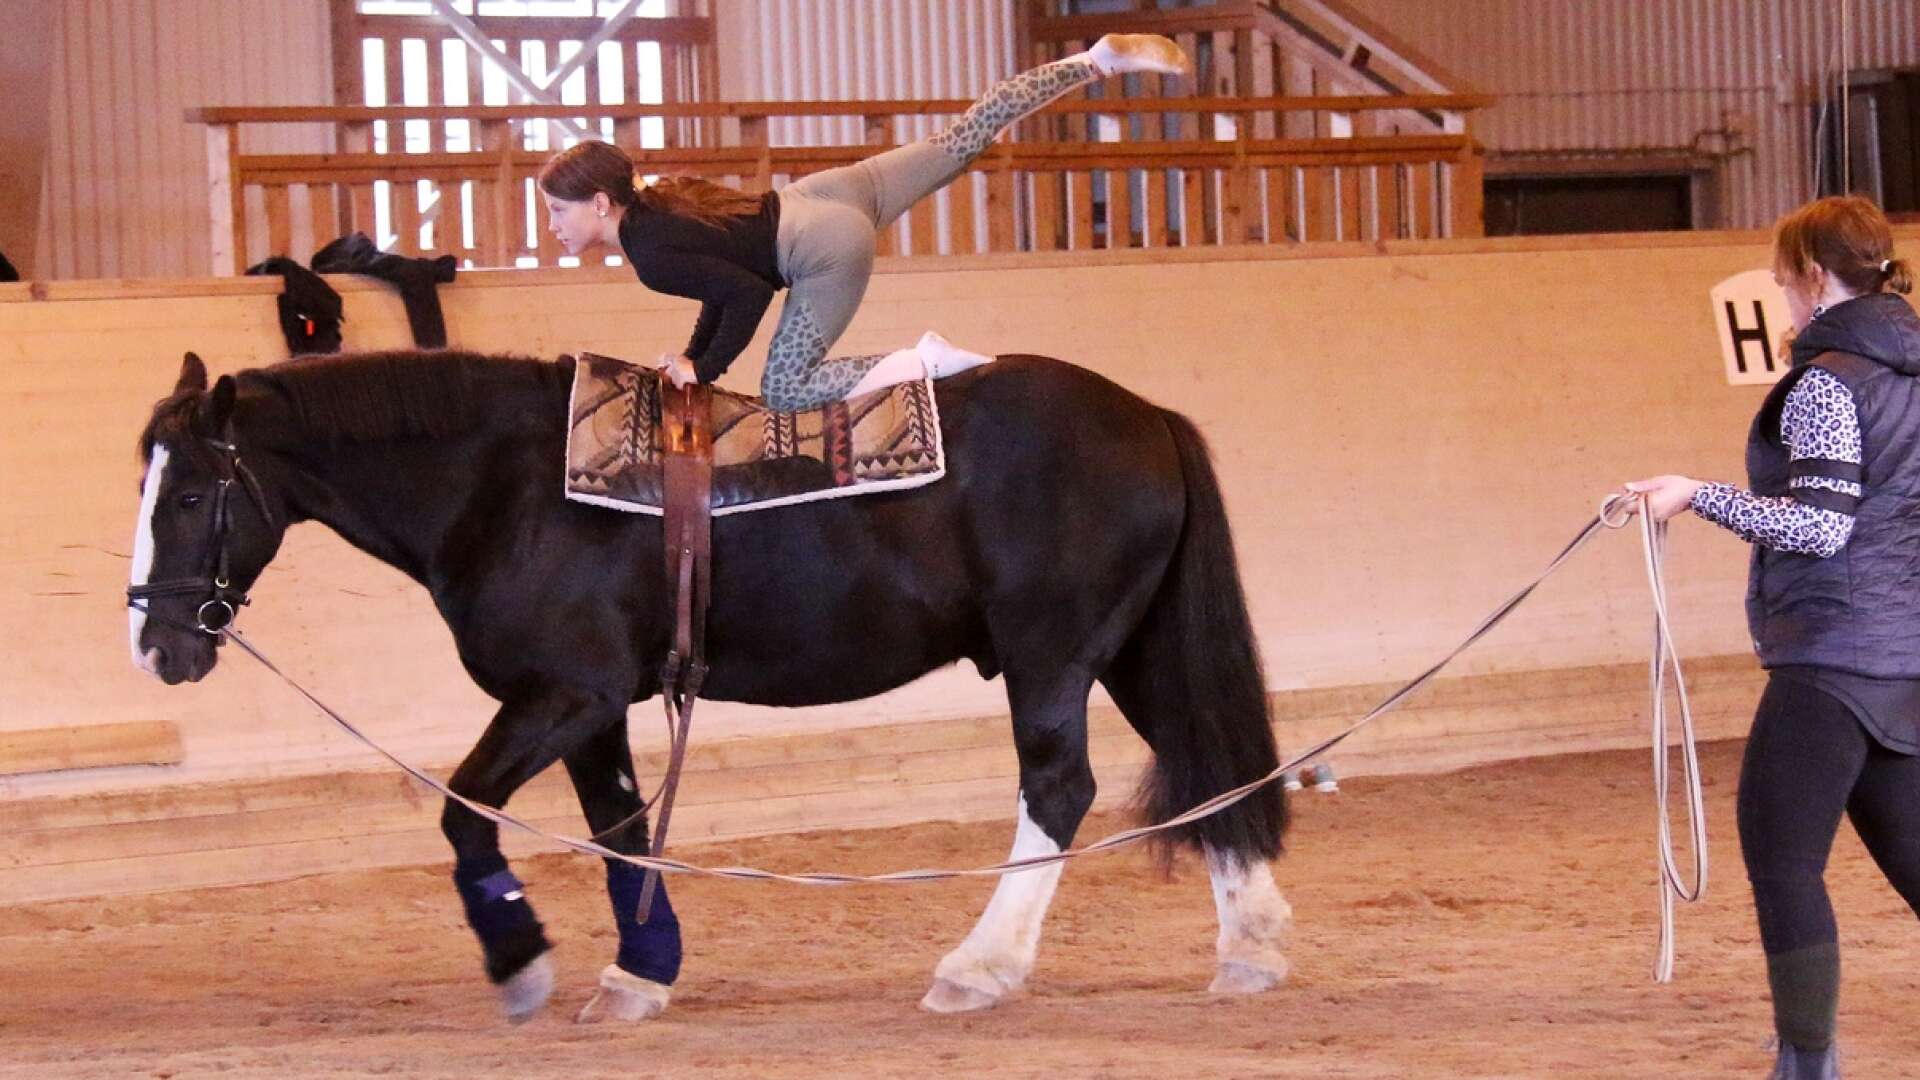 Voltige handlar om att göra akrobatiska övningar på hästryggen, förstås i ett tätt samarbete med hästen.